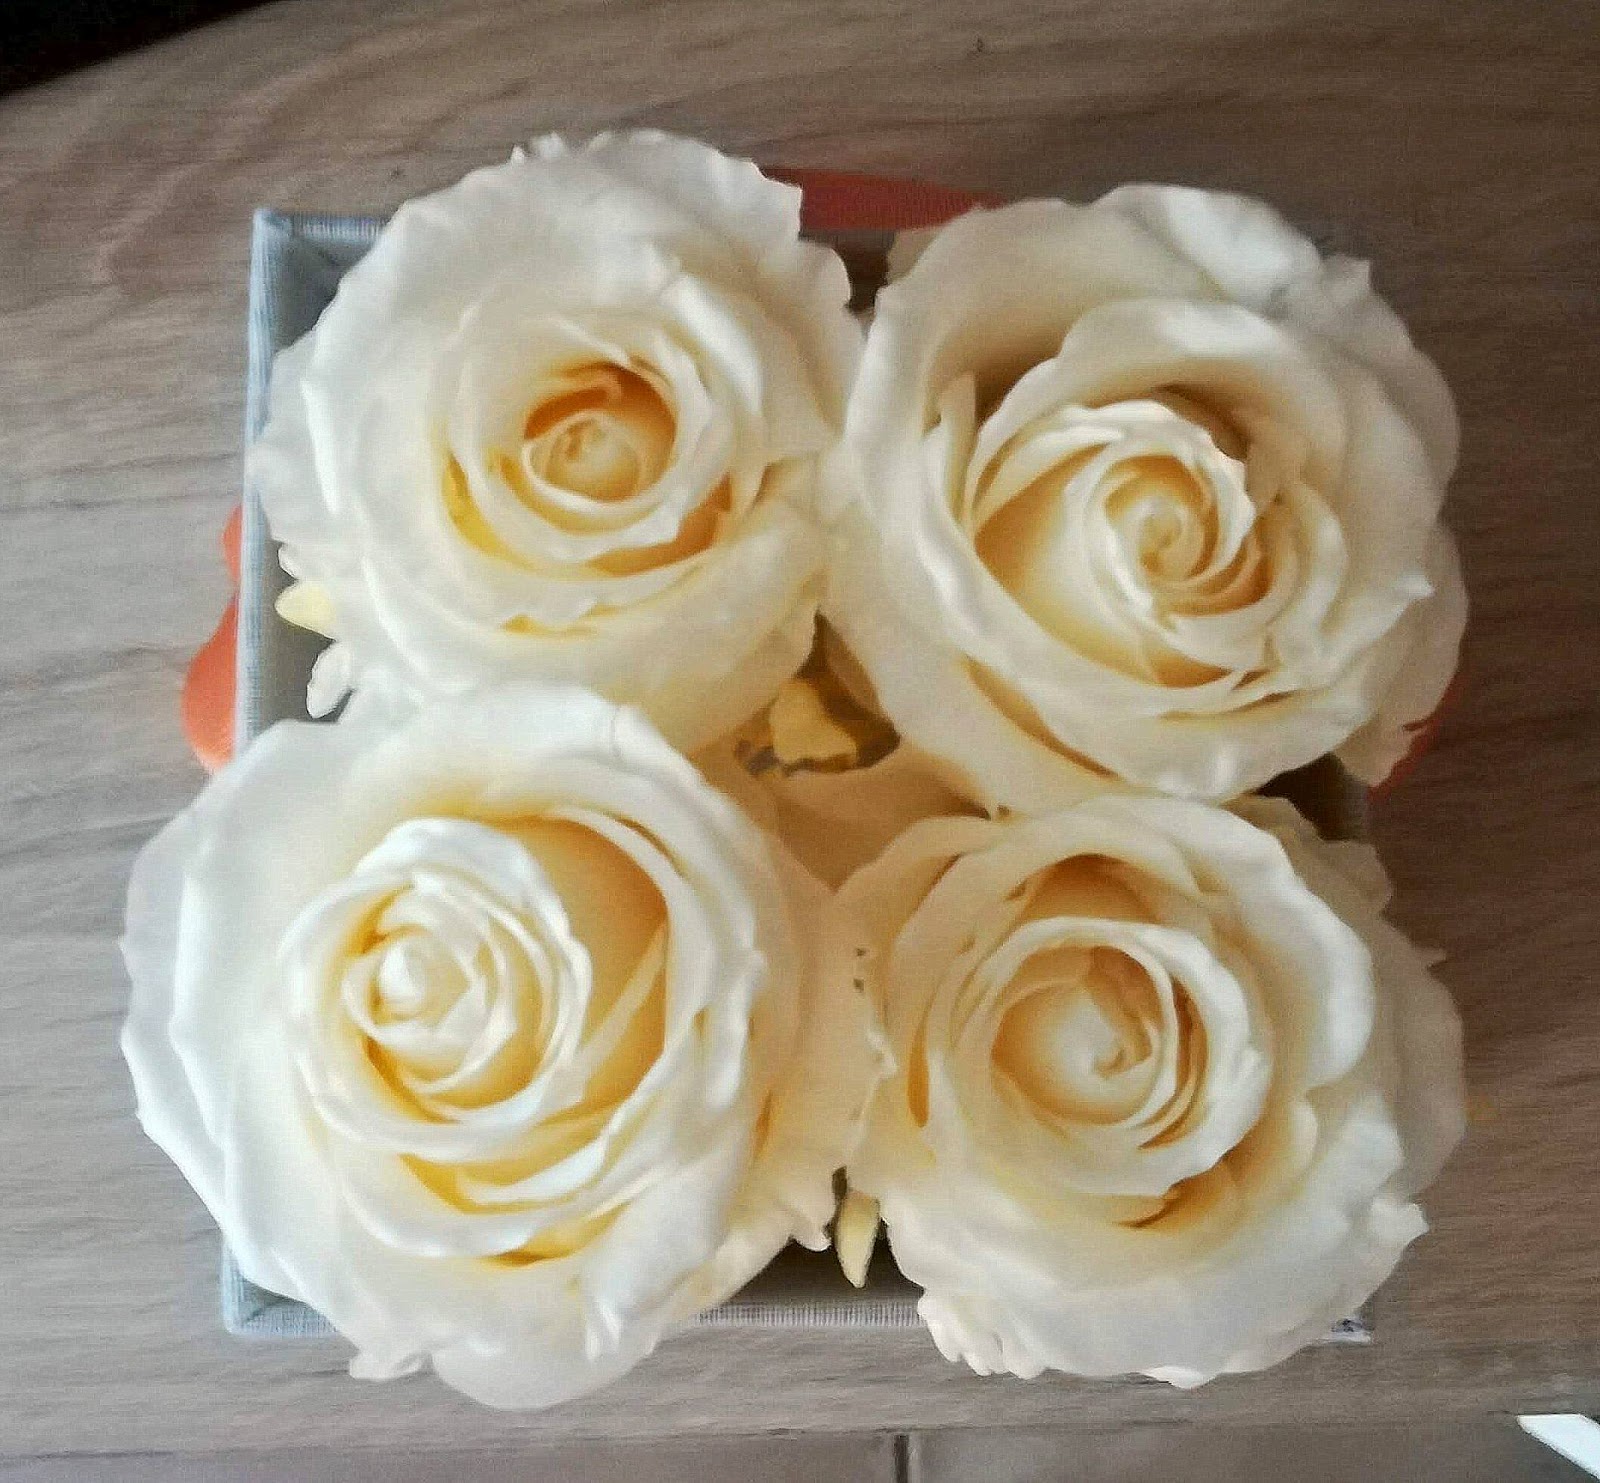 Le Nouveau Parfum Flower By Kenzo Poppy Bouquet Coups De Coeur